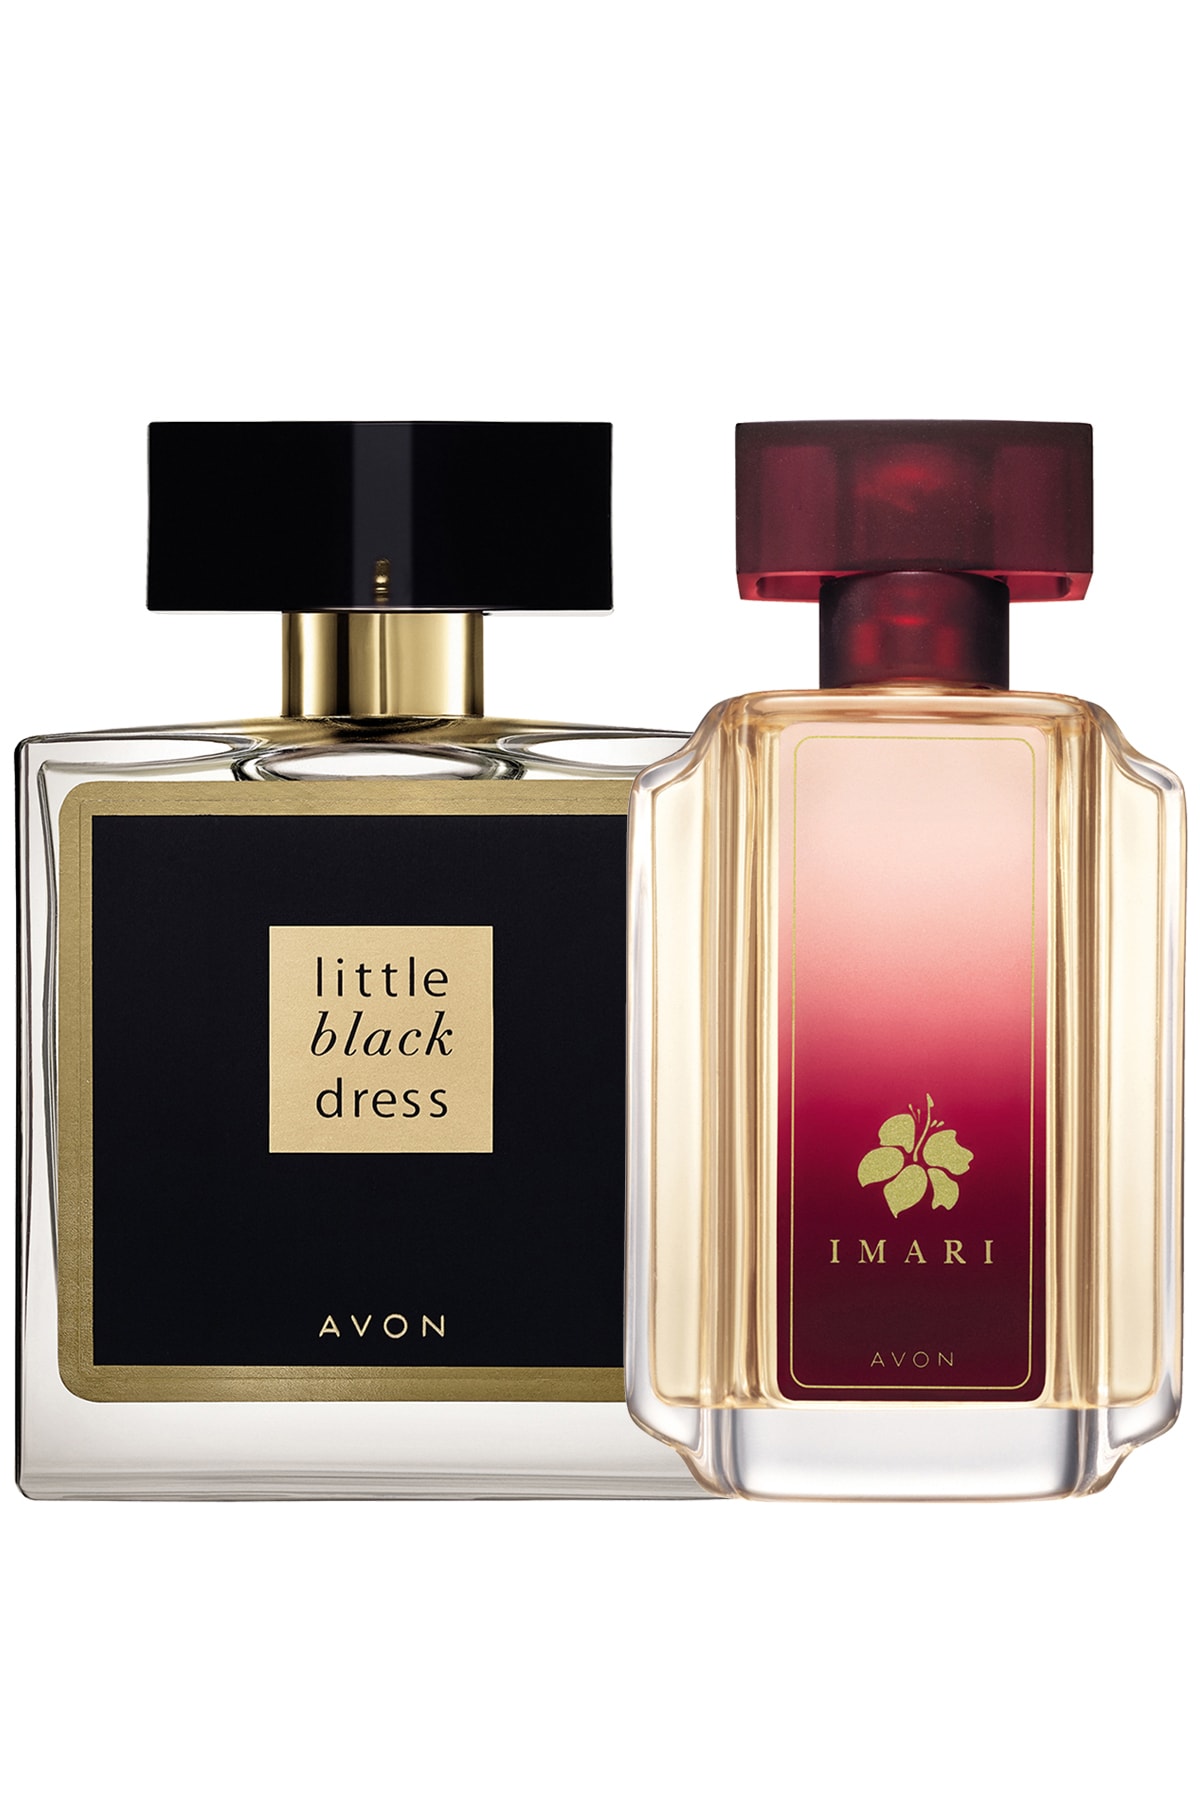 AVON Little Black Dress Ve Imari Kadın Parfüm Paketi